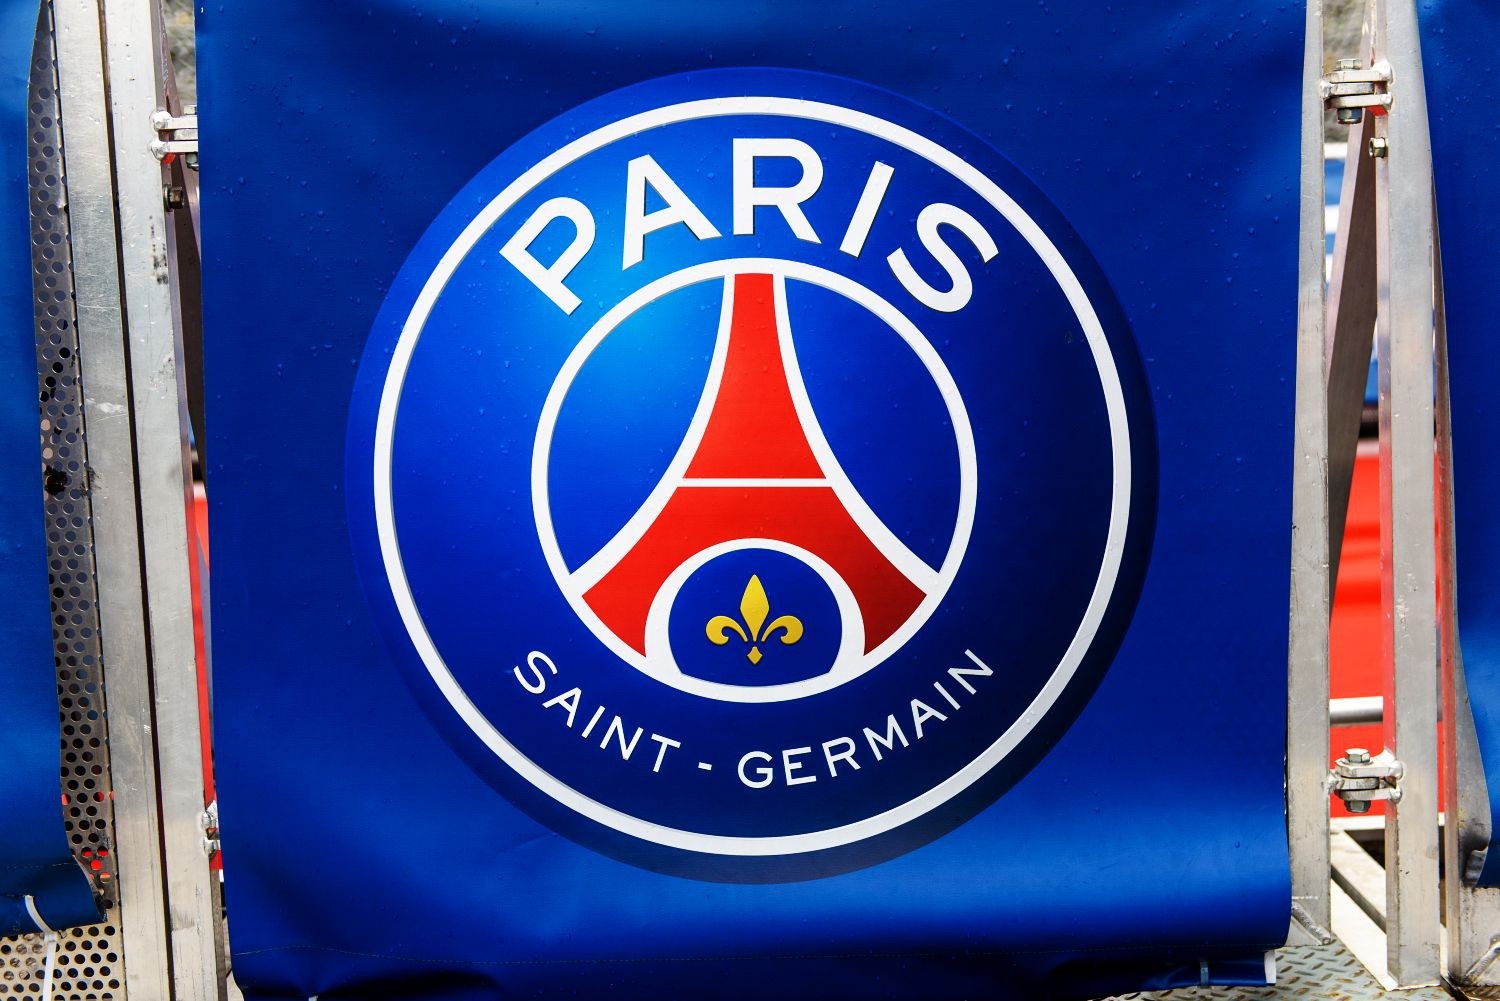 Paris Saint-Germain: Rywalizacja, która mogła doprowadzić do tragedii. Pierwsze wyniki śledztwa w sprawie napaści na piłkarkę